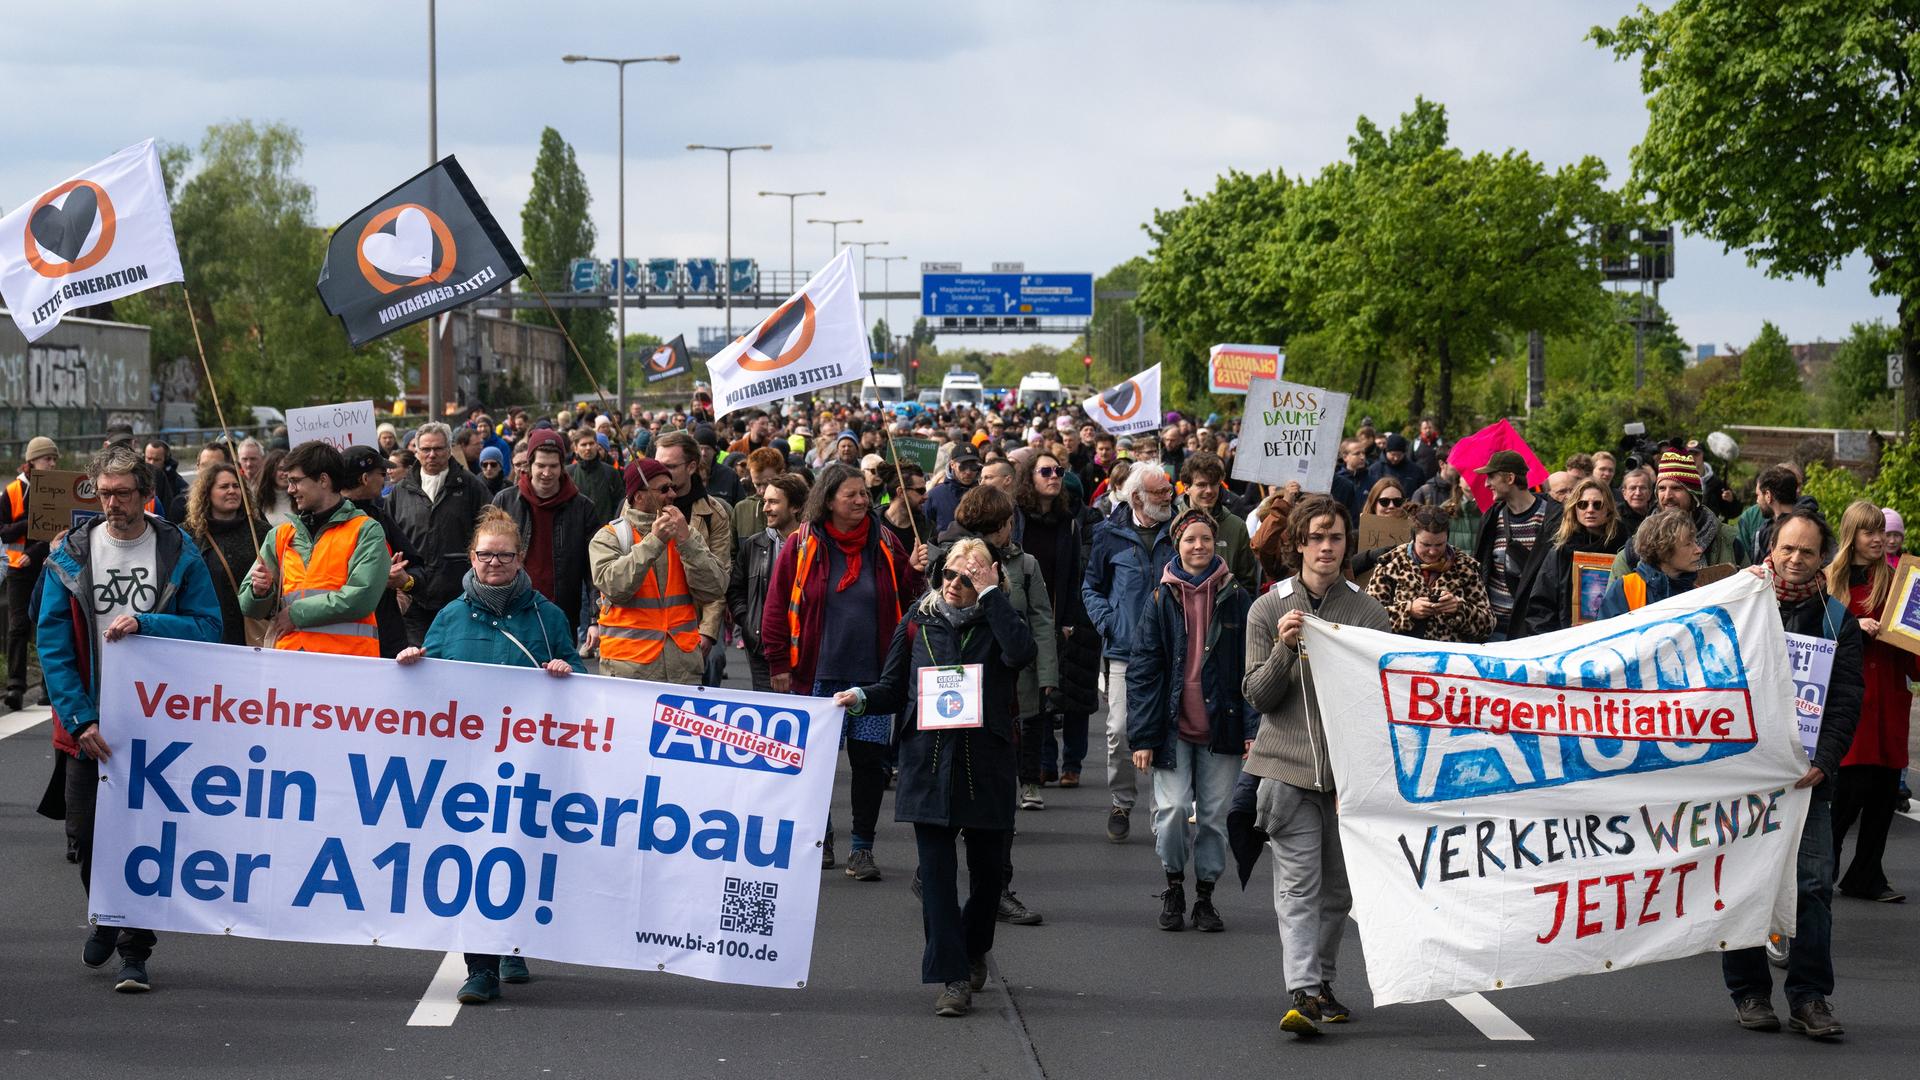 Zu sehen sind Teilnehmer einer Demonstration gegen der Weiterbau der A100 in Berlin.